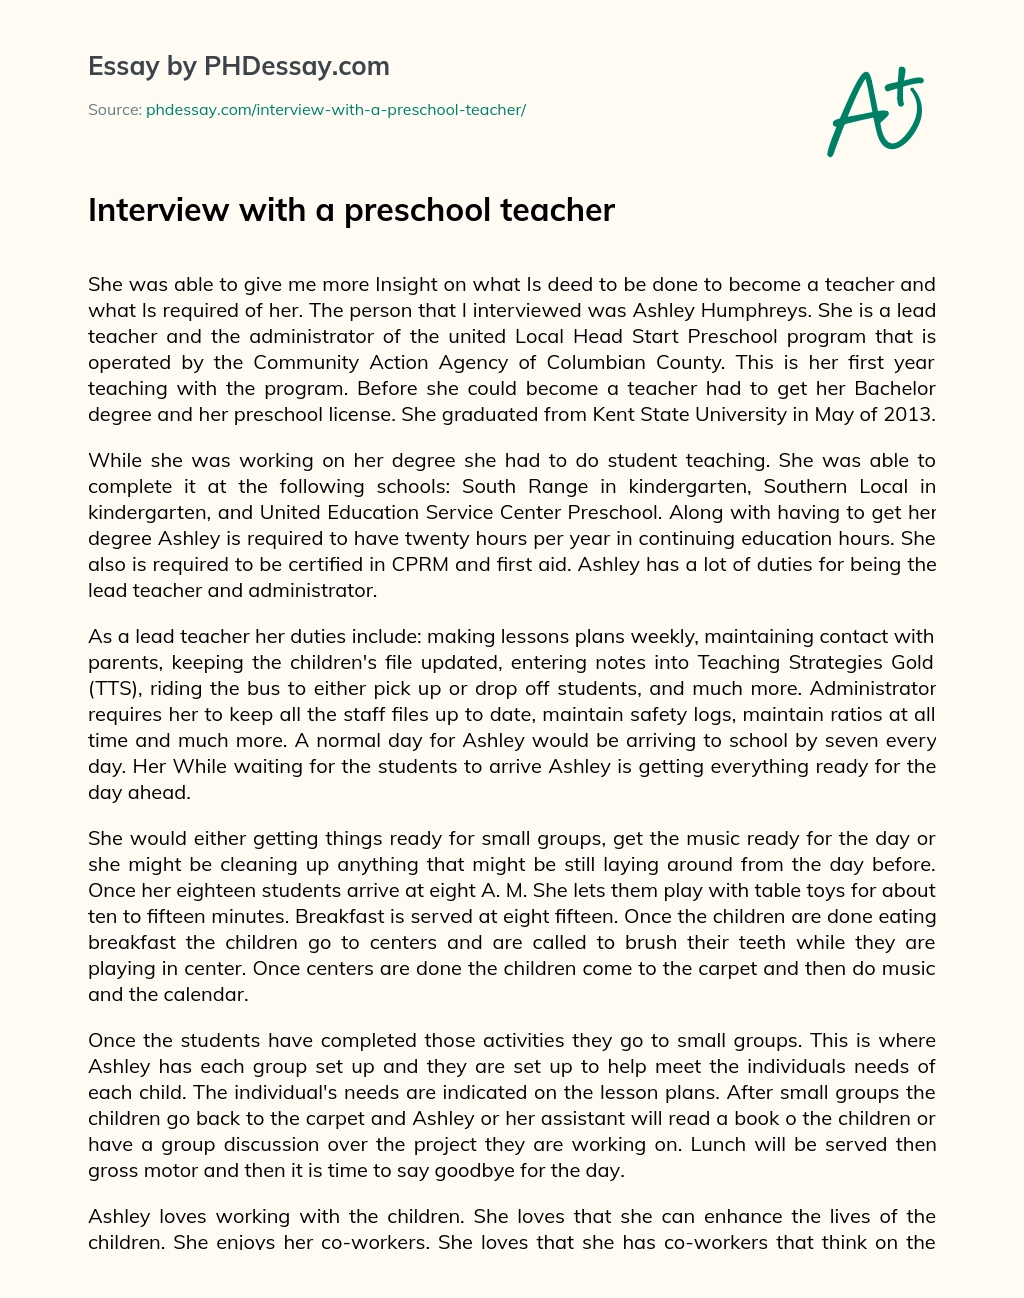 Interview with a preschool teacher essay